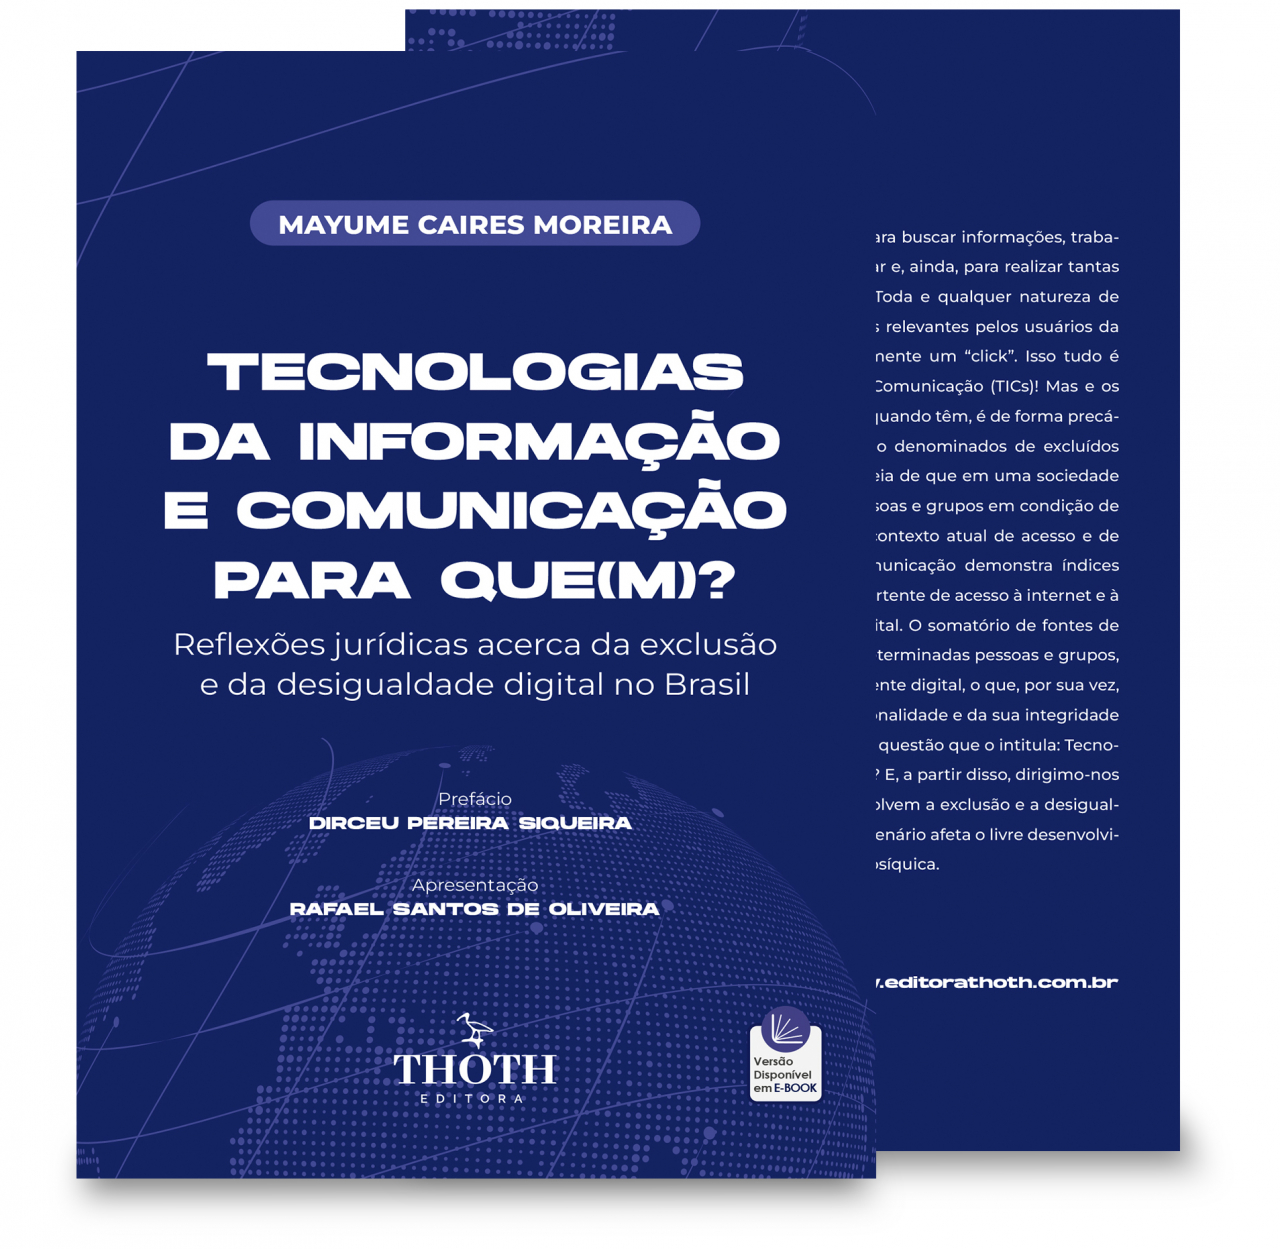 PDF) USO DE TECNOLOGIAS DIGITAIS DE INFORMAÇÃO E COMUNICAÇÃO POR